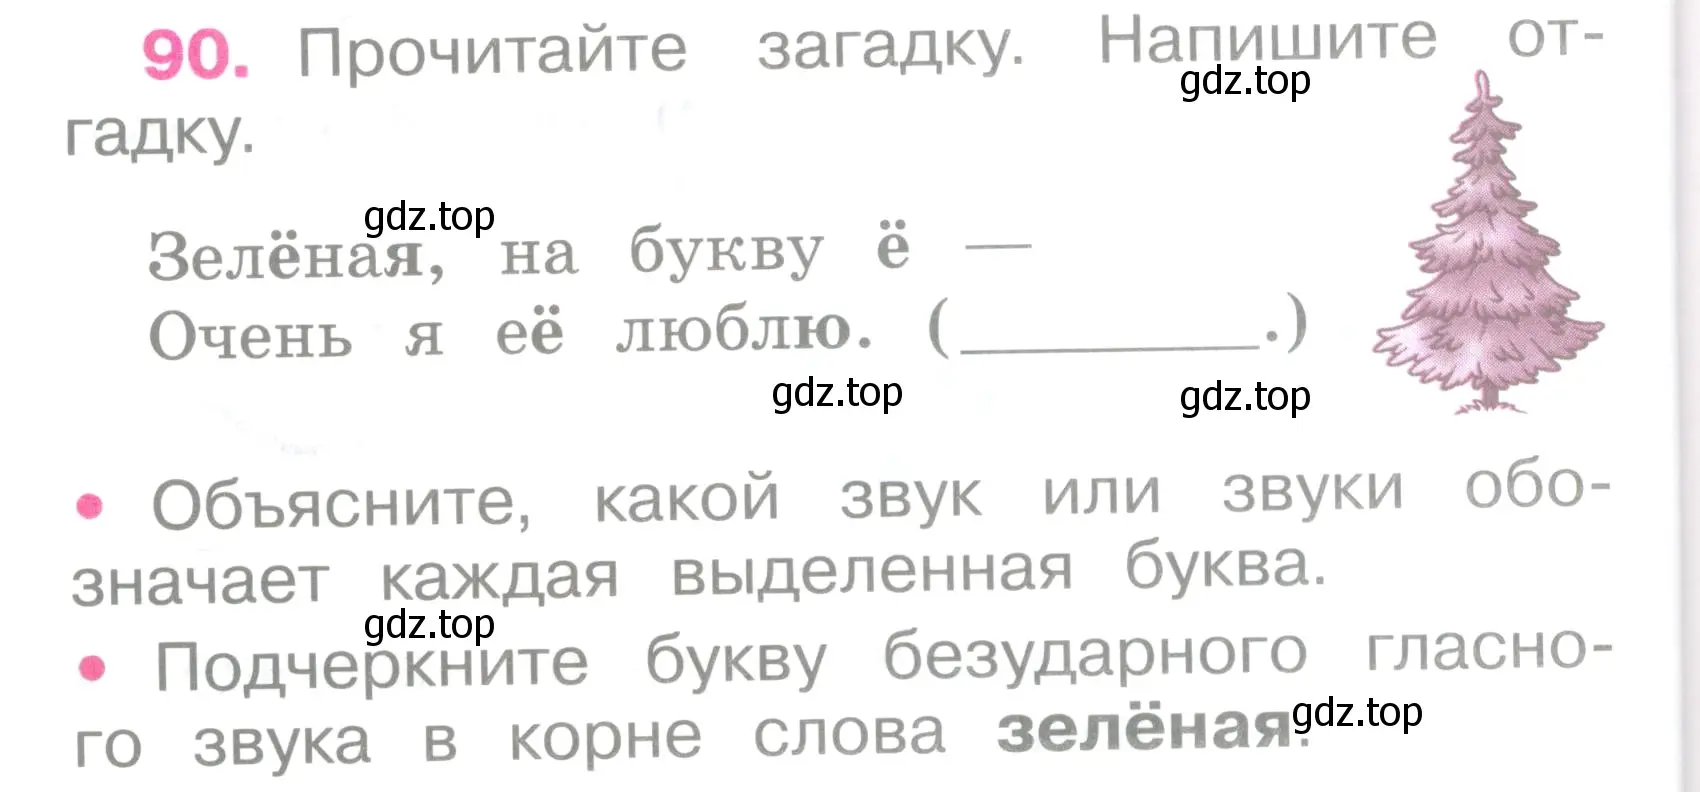 Условие номер 90 (страница 40) гдз по русскому языку 2 класс Канакина, рабочая тетрадь 1 часть